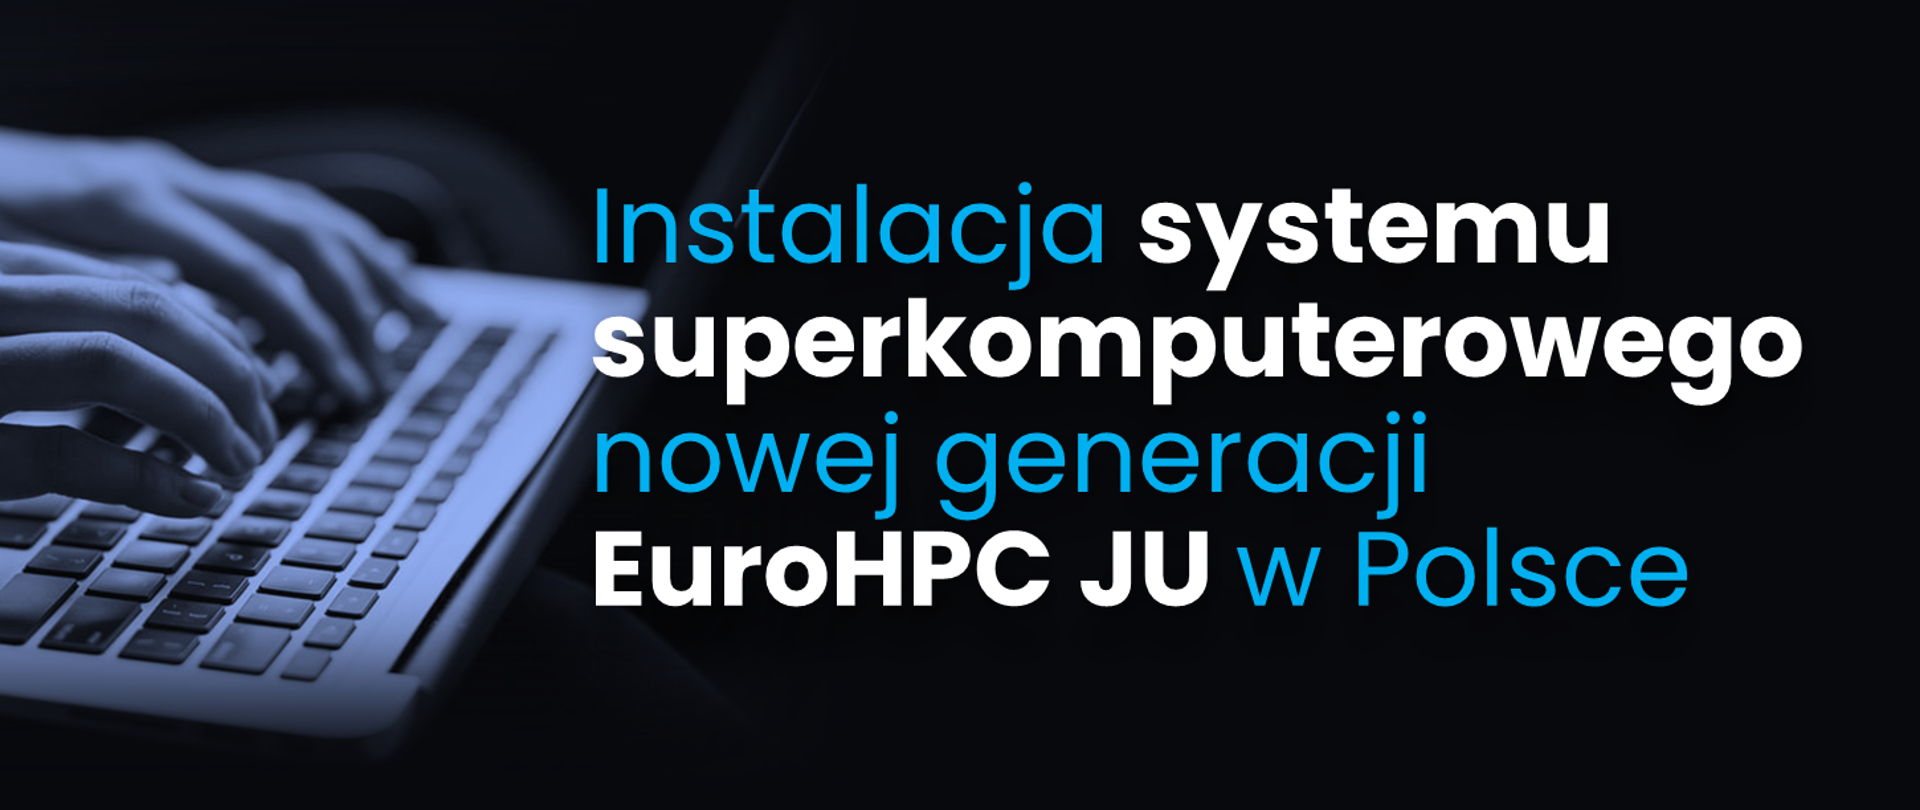 Instalacja systemu superkomputerowego nowej generacji EuroHPC JU w Polsce